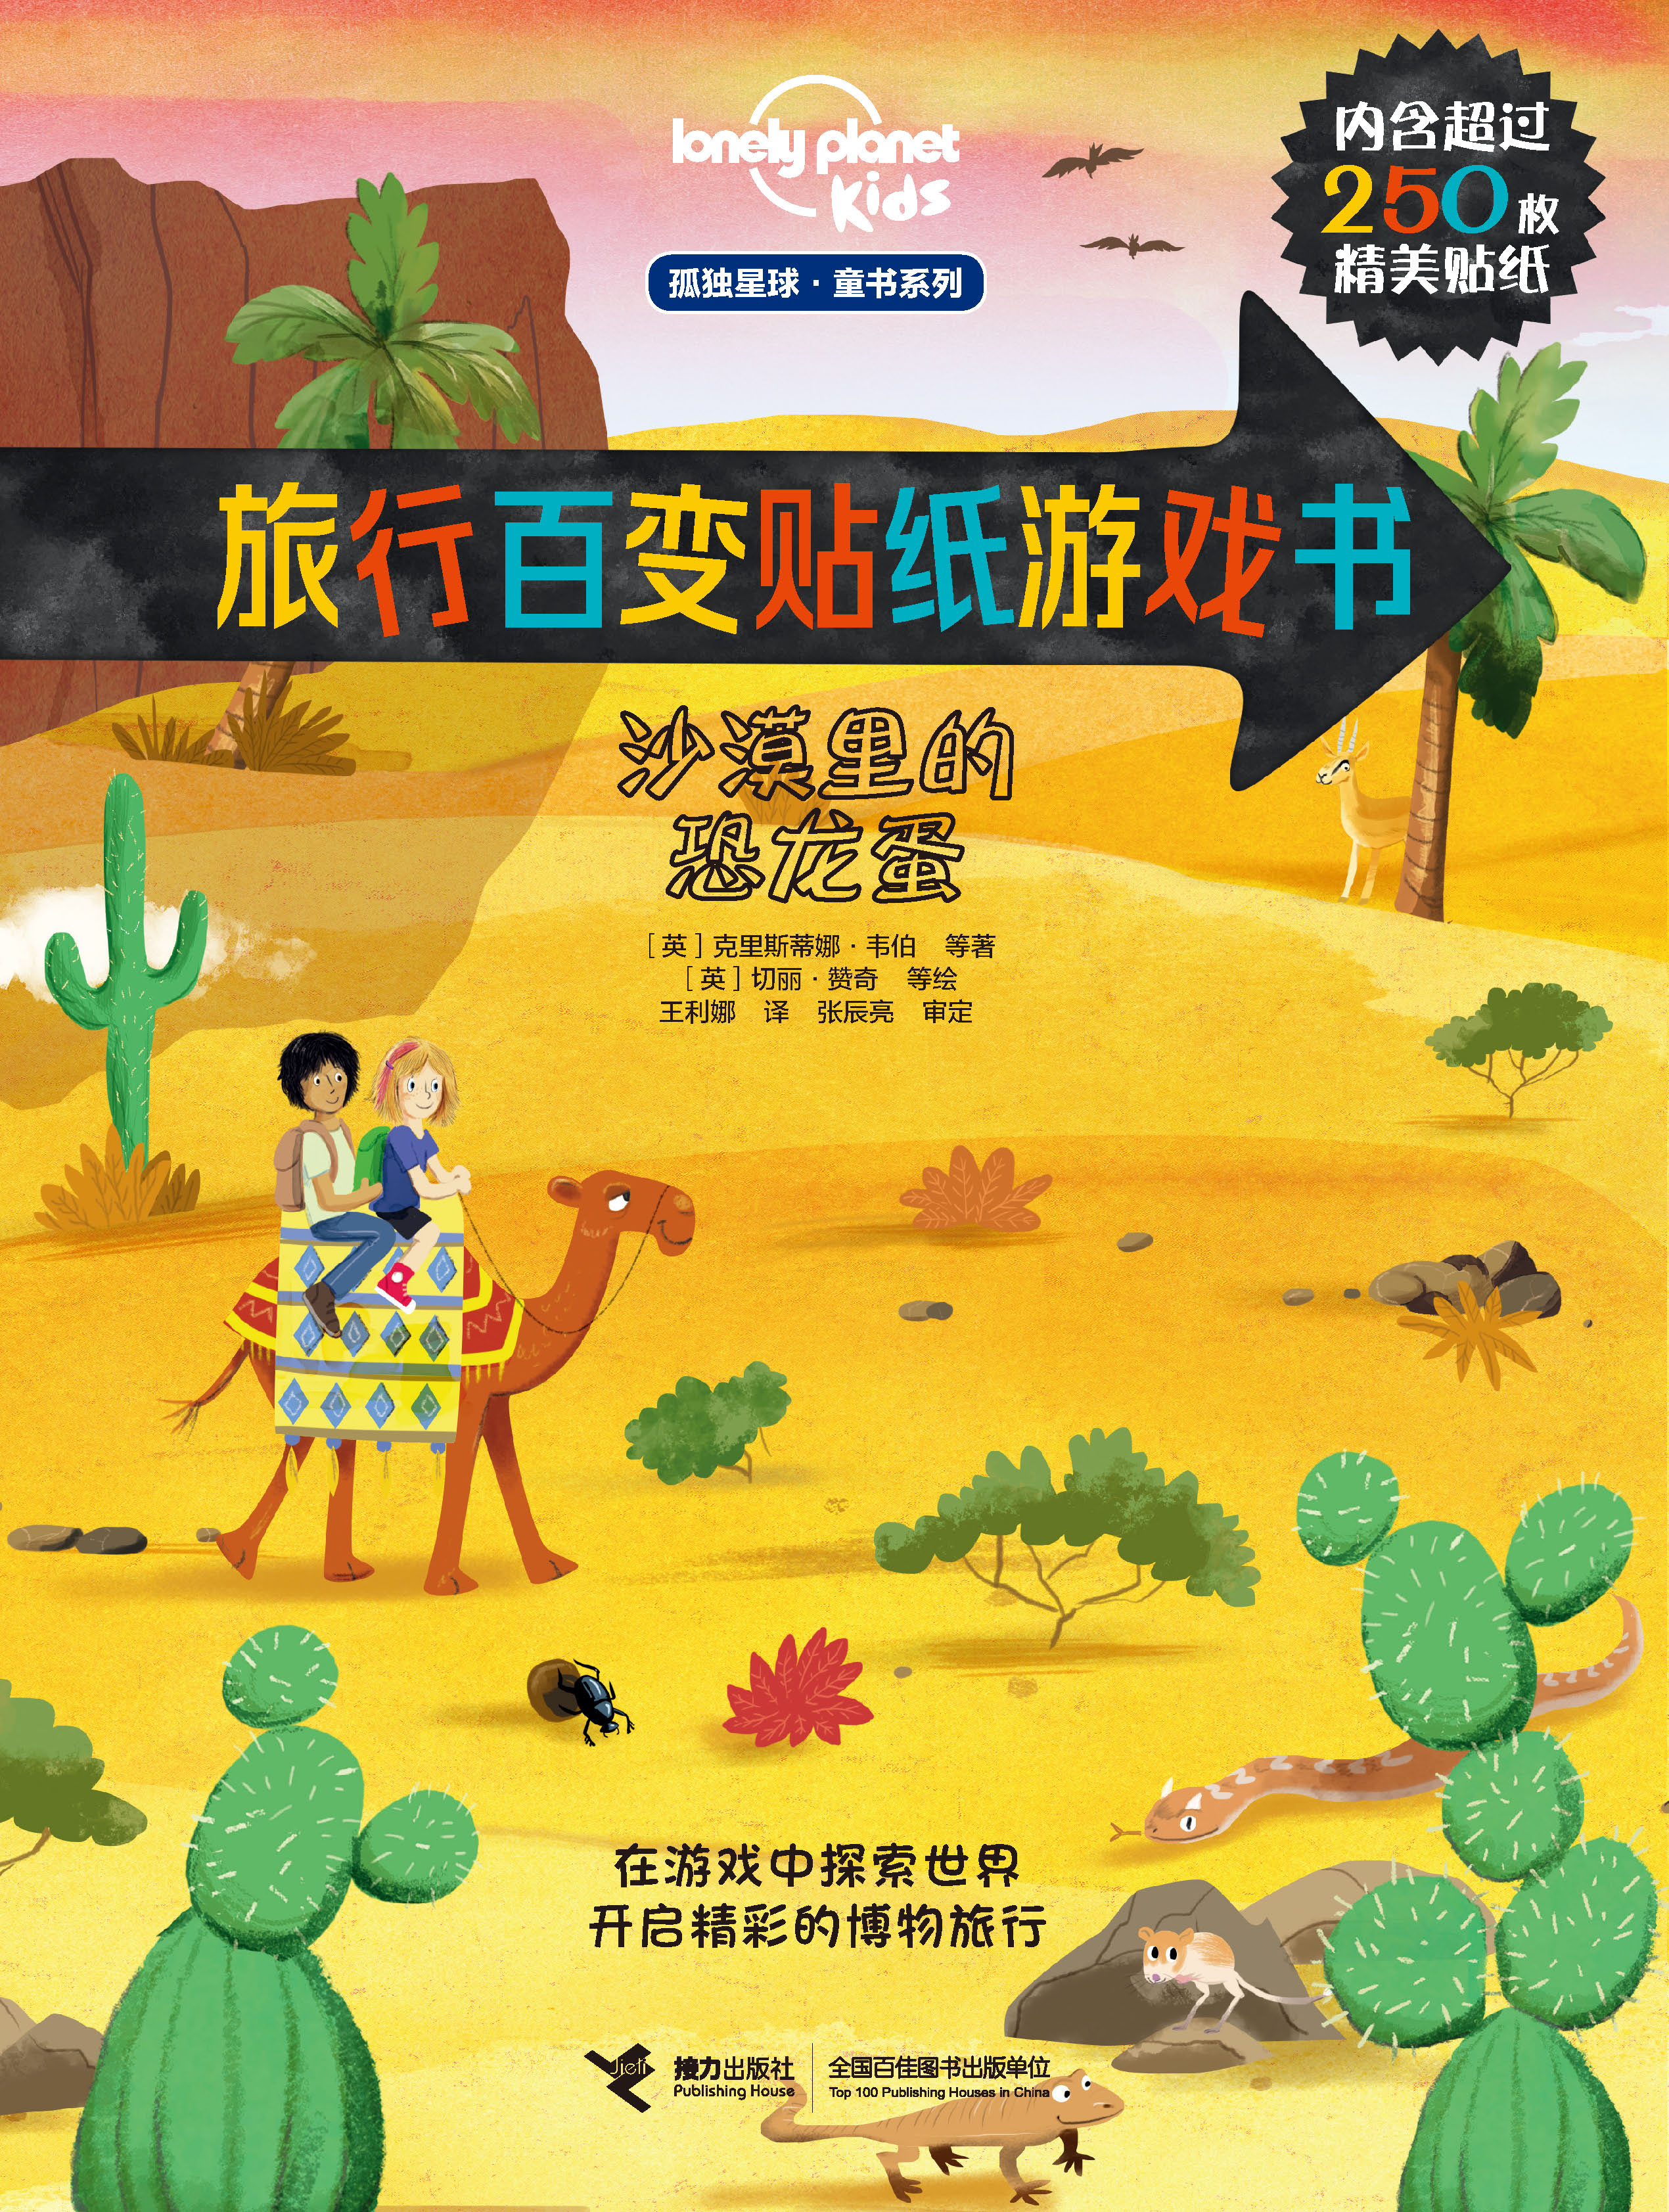 孤独星球. 童书系列. 旅行百变贴纸游戏书:沙漠里的恐龙蛋